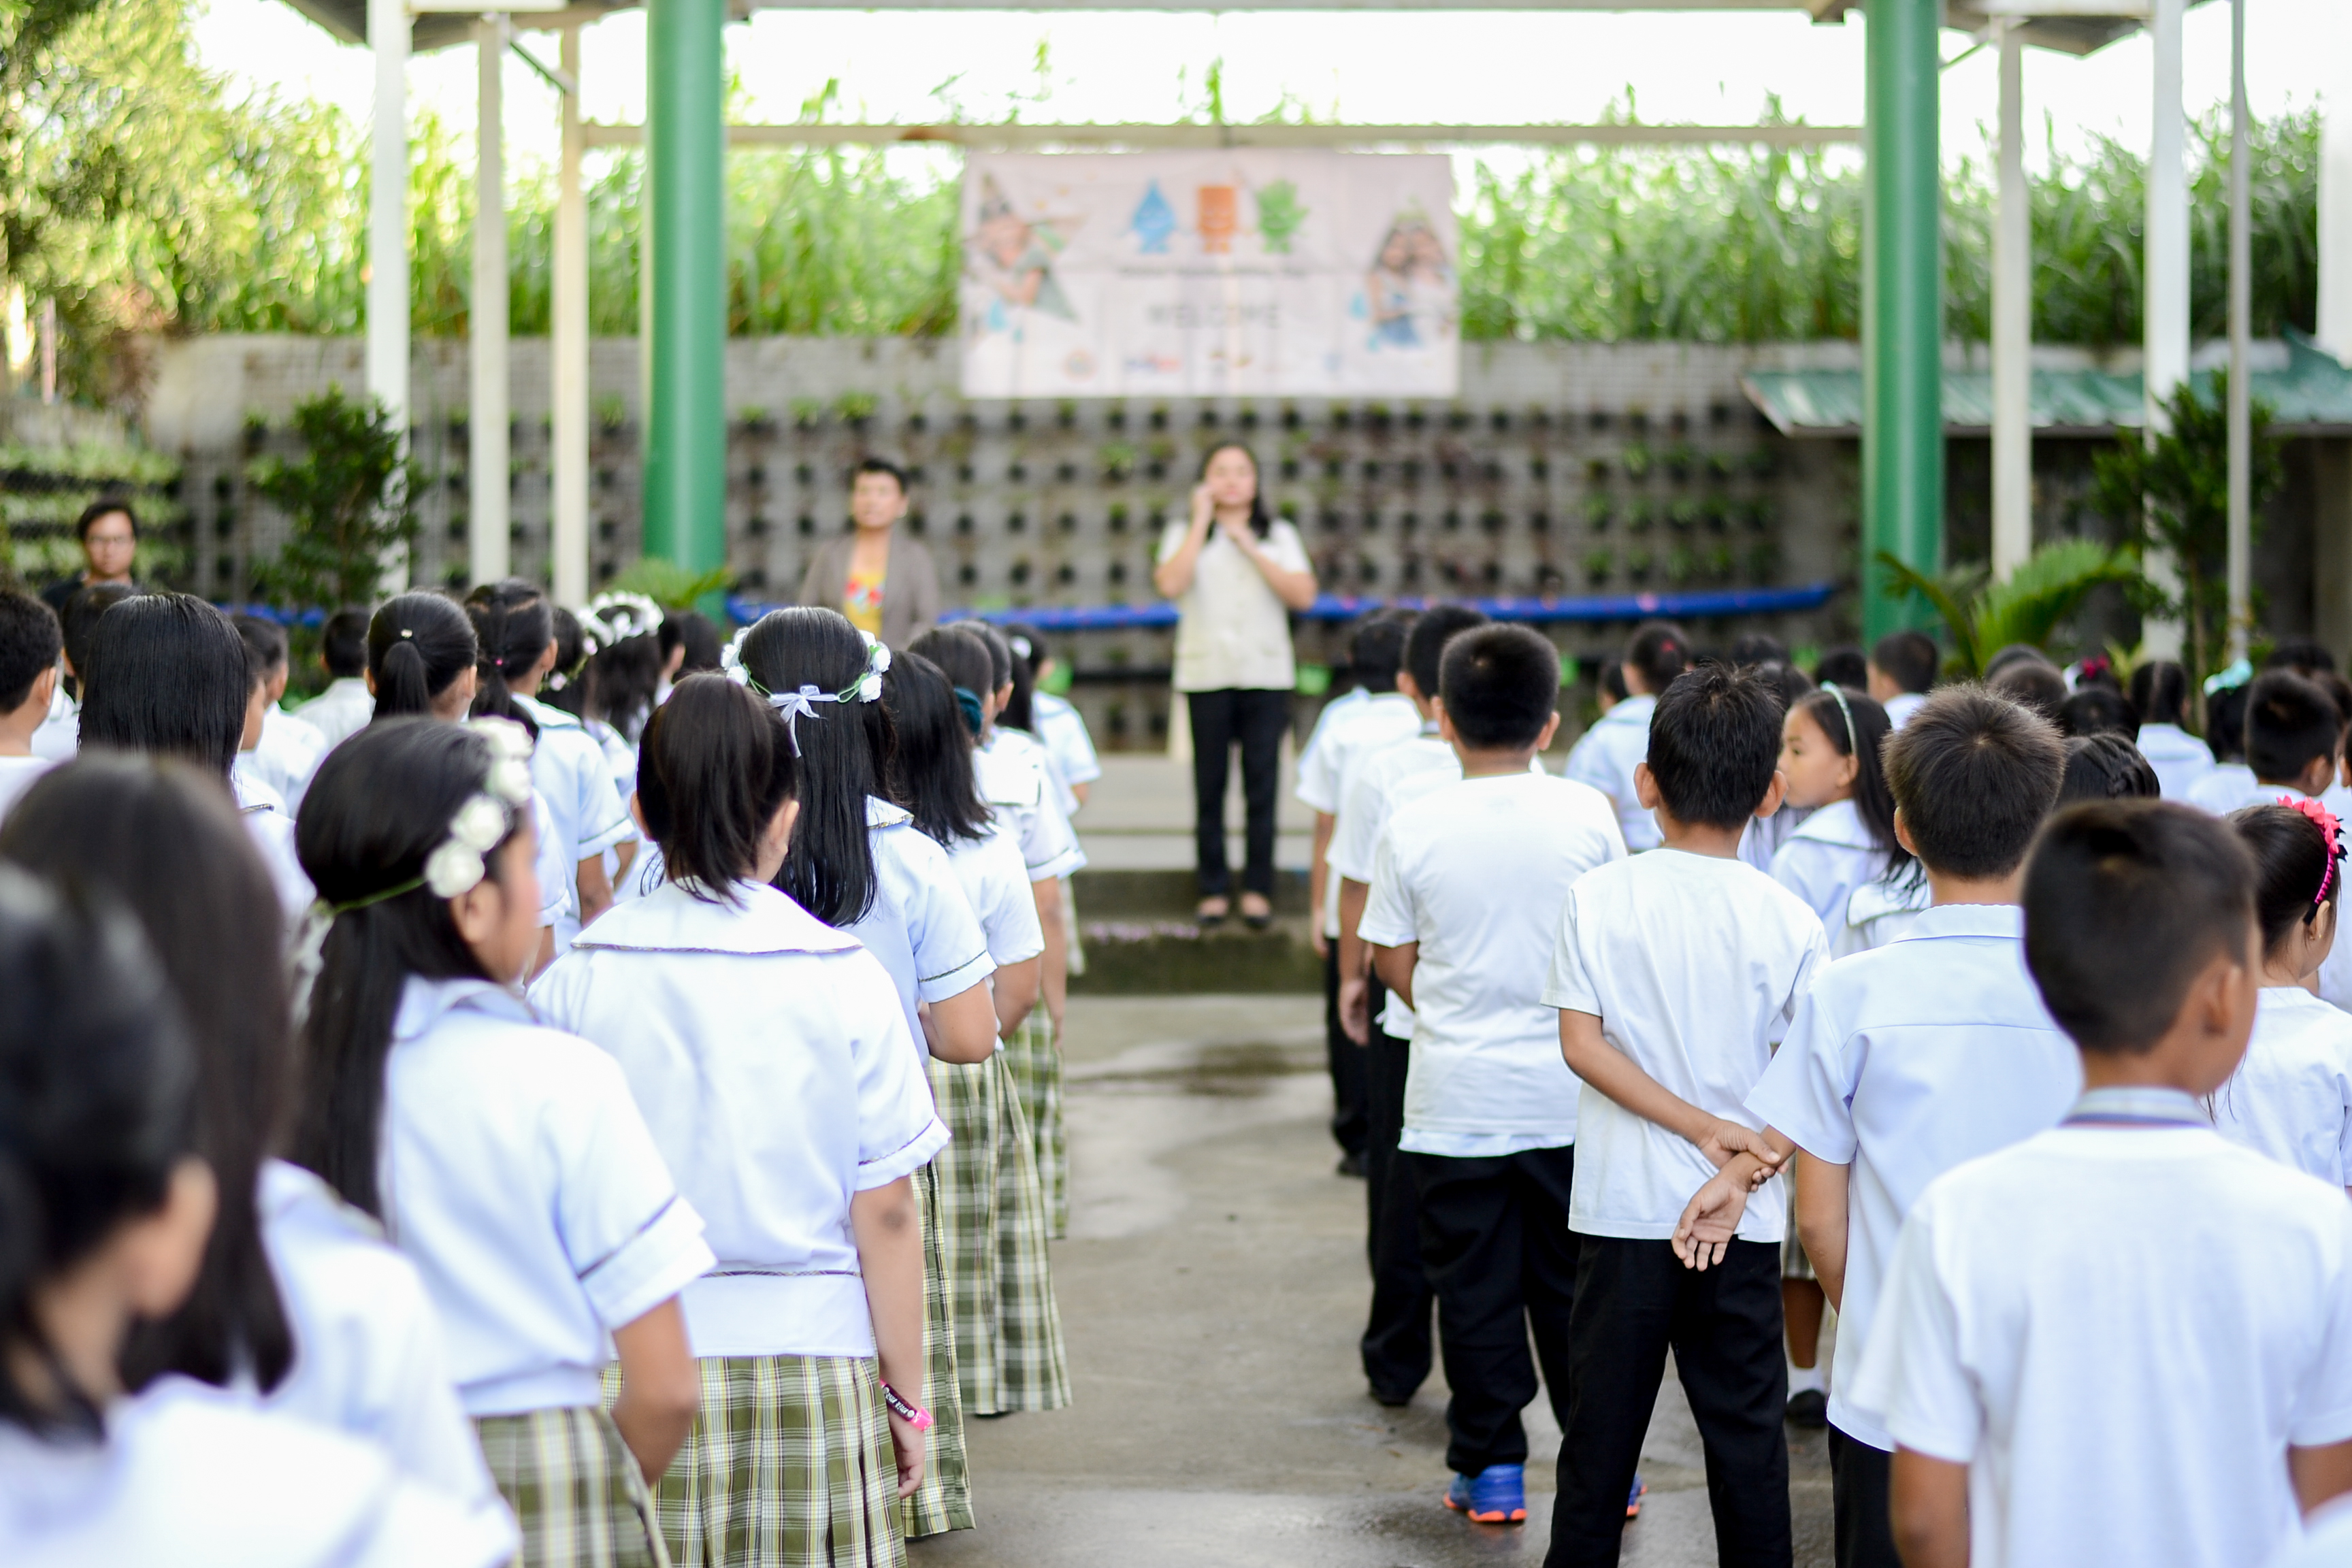 Hygieneunterricht in einer Schule im Rahmen des GIZ-Programms "Fit for School" in Südostasien